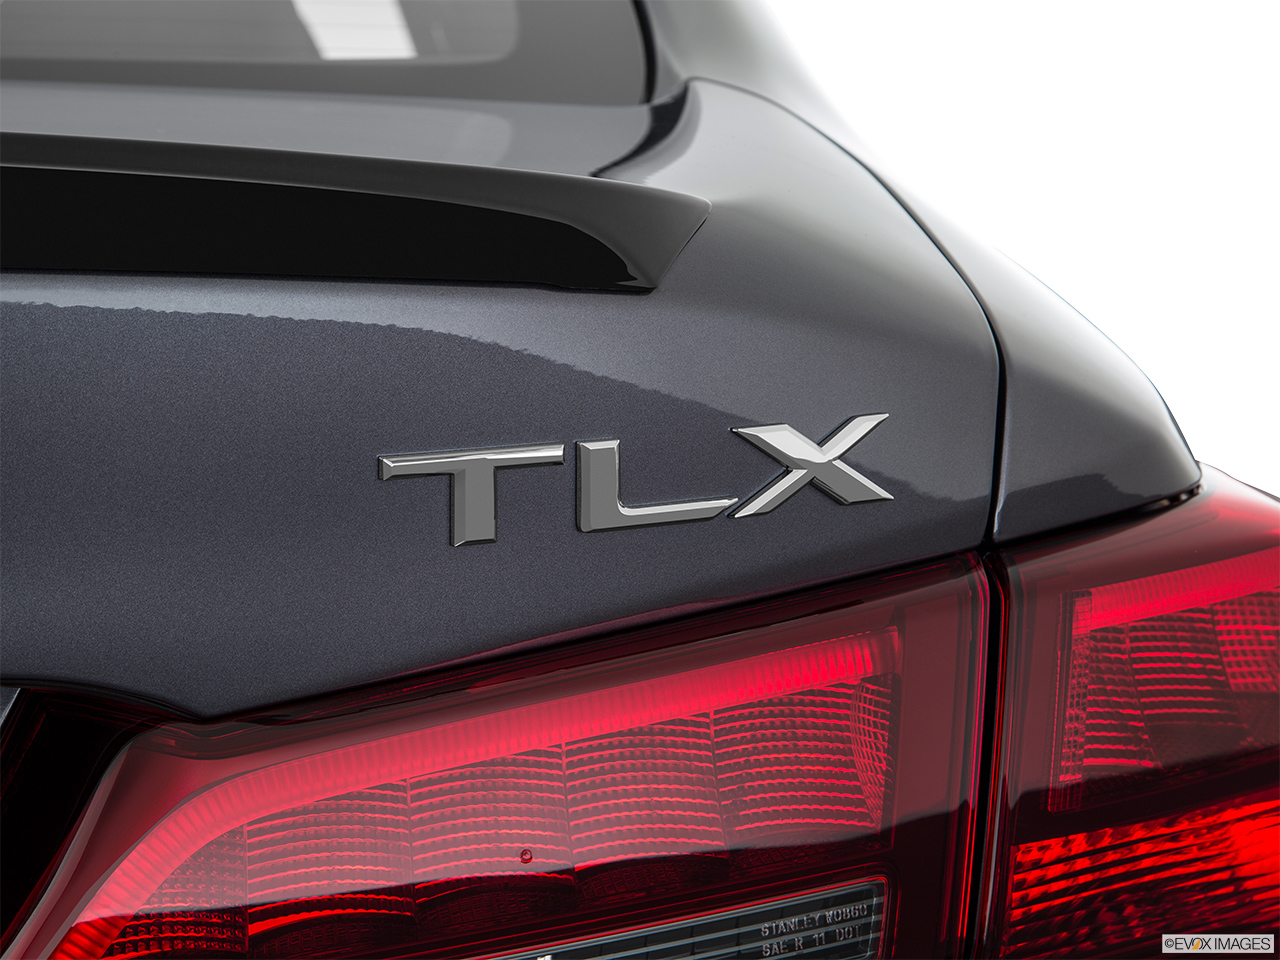 2019 Acura TLX 3.5L Rear model badge/emblem 